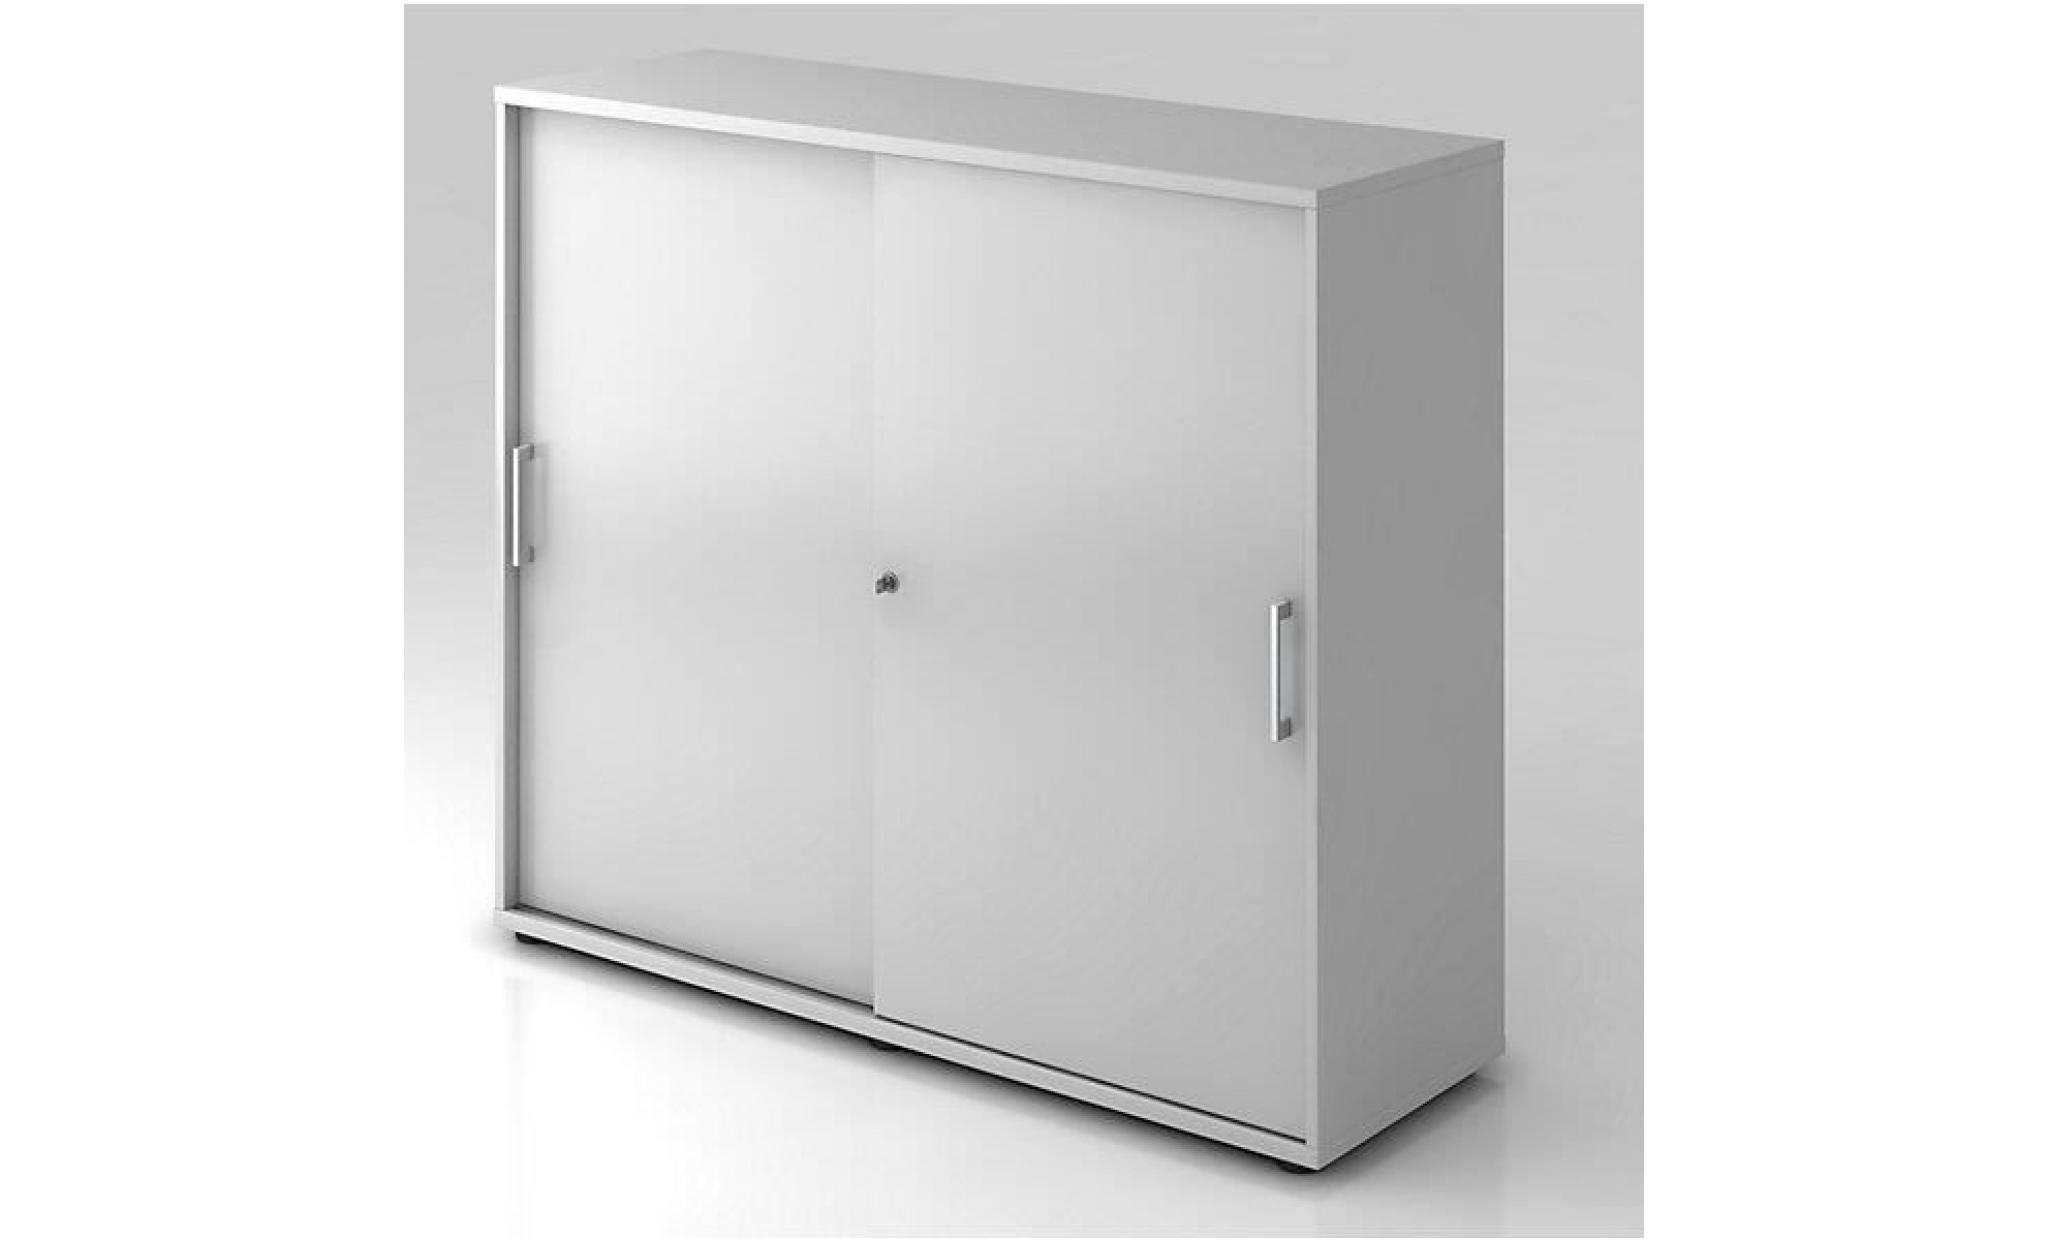 office akktiv armoire à portes coulissantes   hauteur 760 mm, 1 tablette   gris clair   armoire de bureau armoire à portes